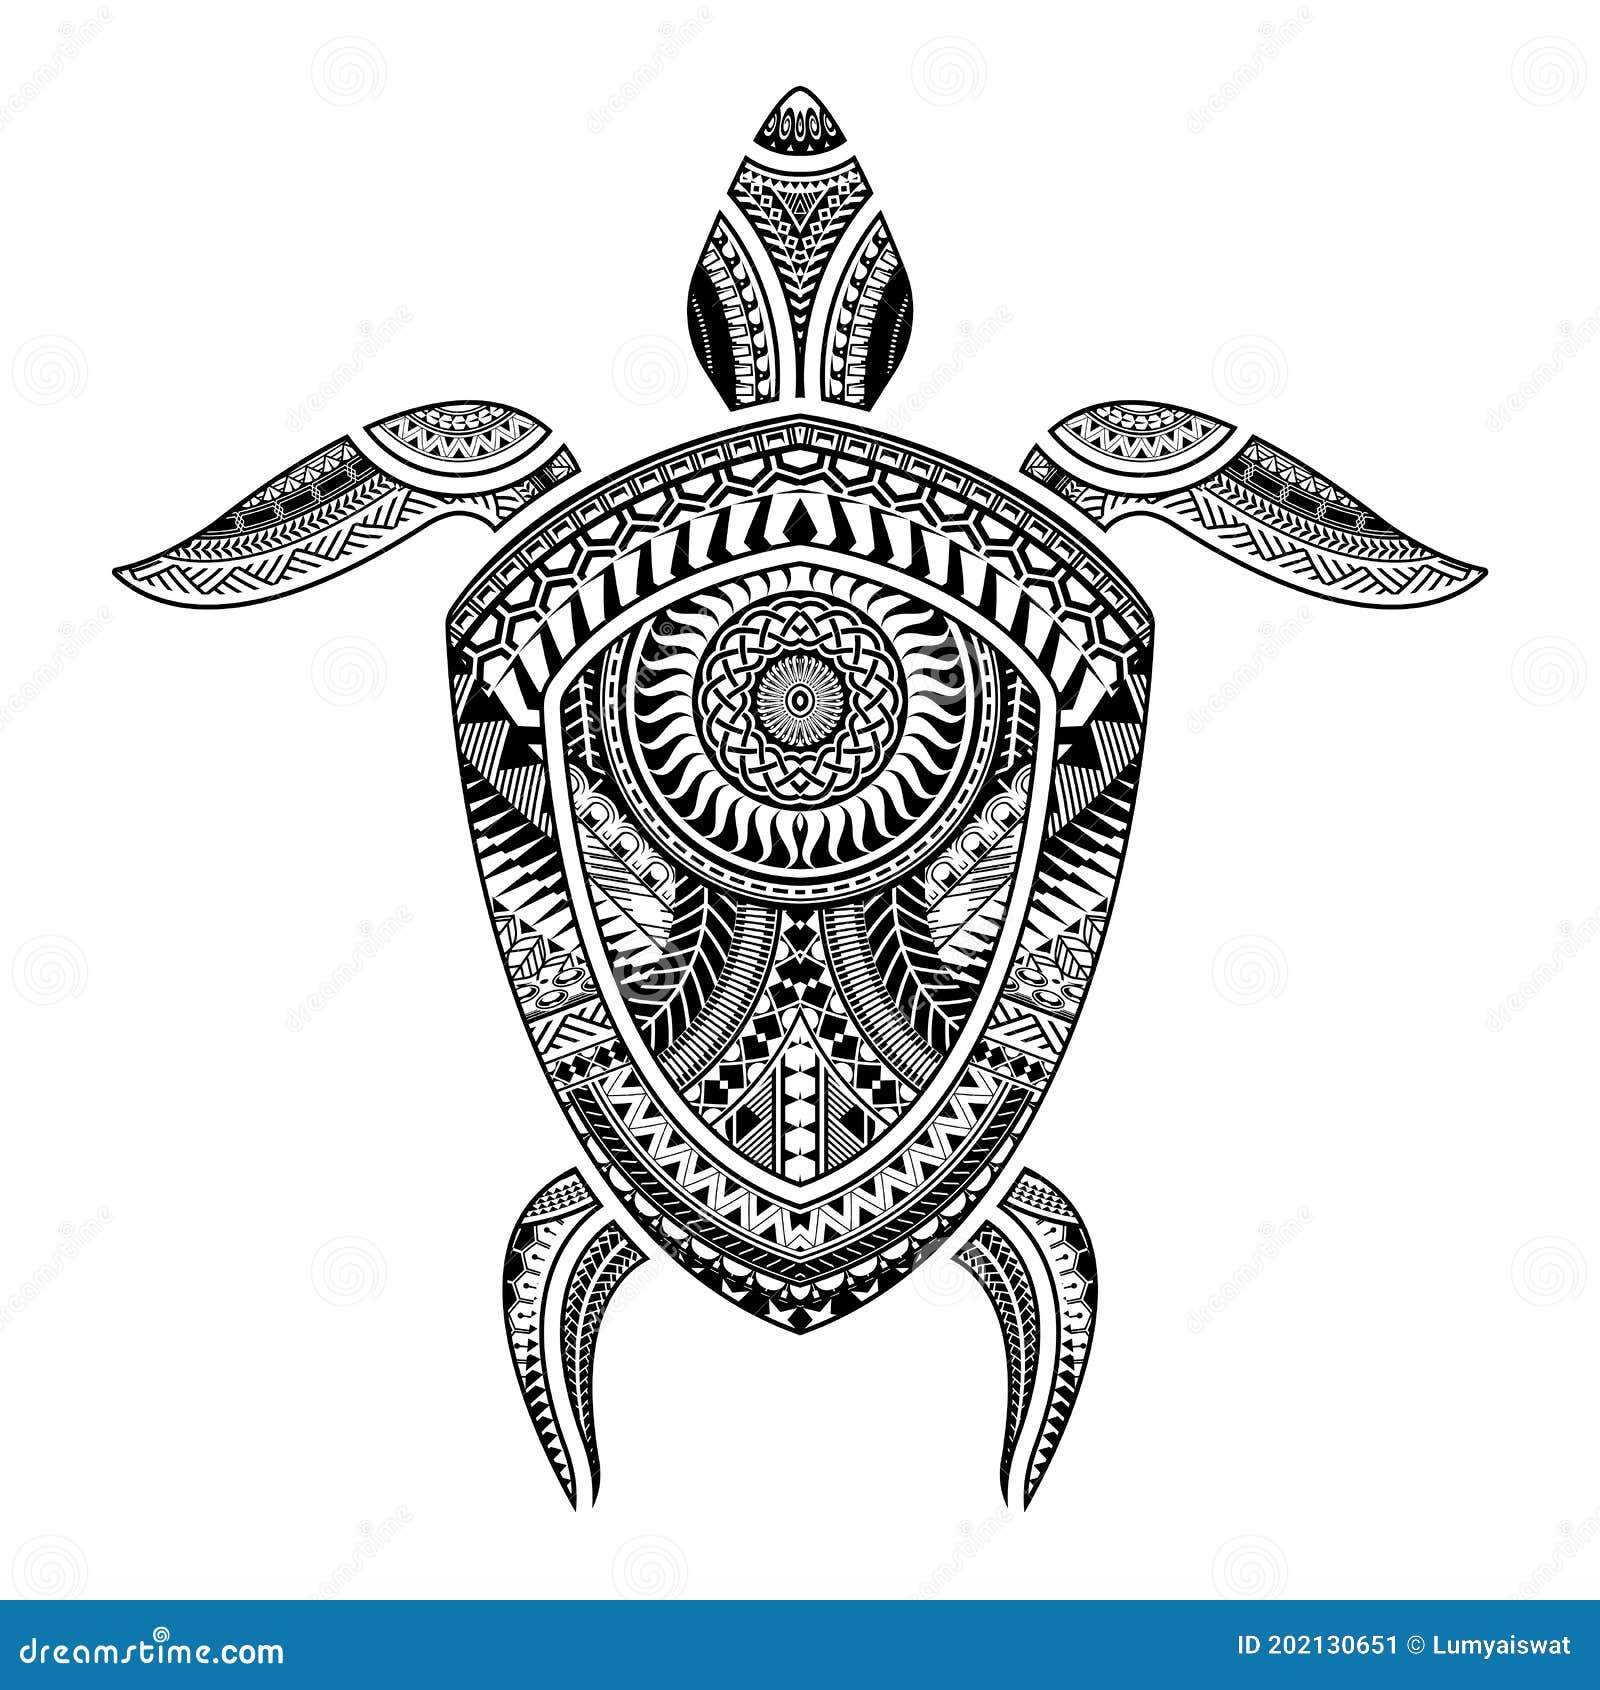 Sự kết hợp giữa hình xăm Polynesian và hình ảnh rùa sẽ đem lại cho bạn sự may mắn và bình an. Đây là một kiểu xăm độc đáo và thú vị, hãy cùng khám phá những mẫu tuyệt đẹp trong hình ảnh liên quan đến từ khóa này.